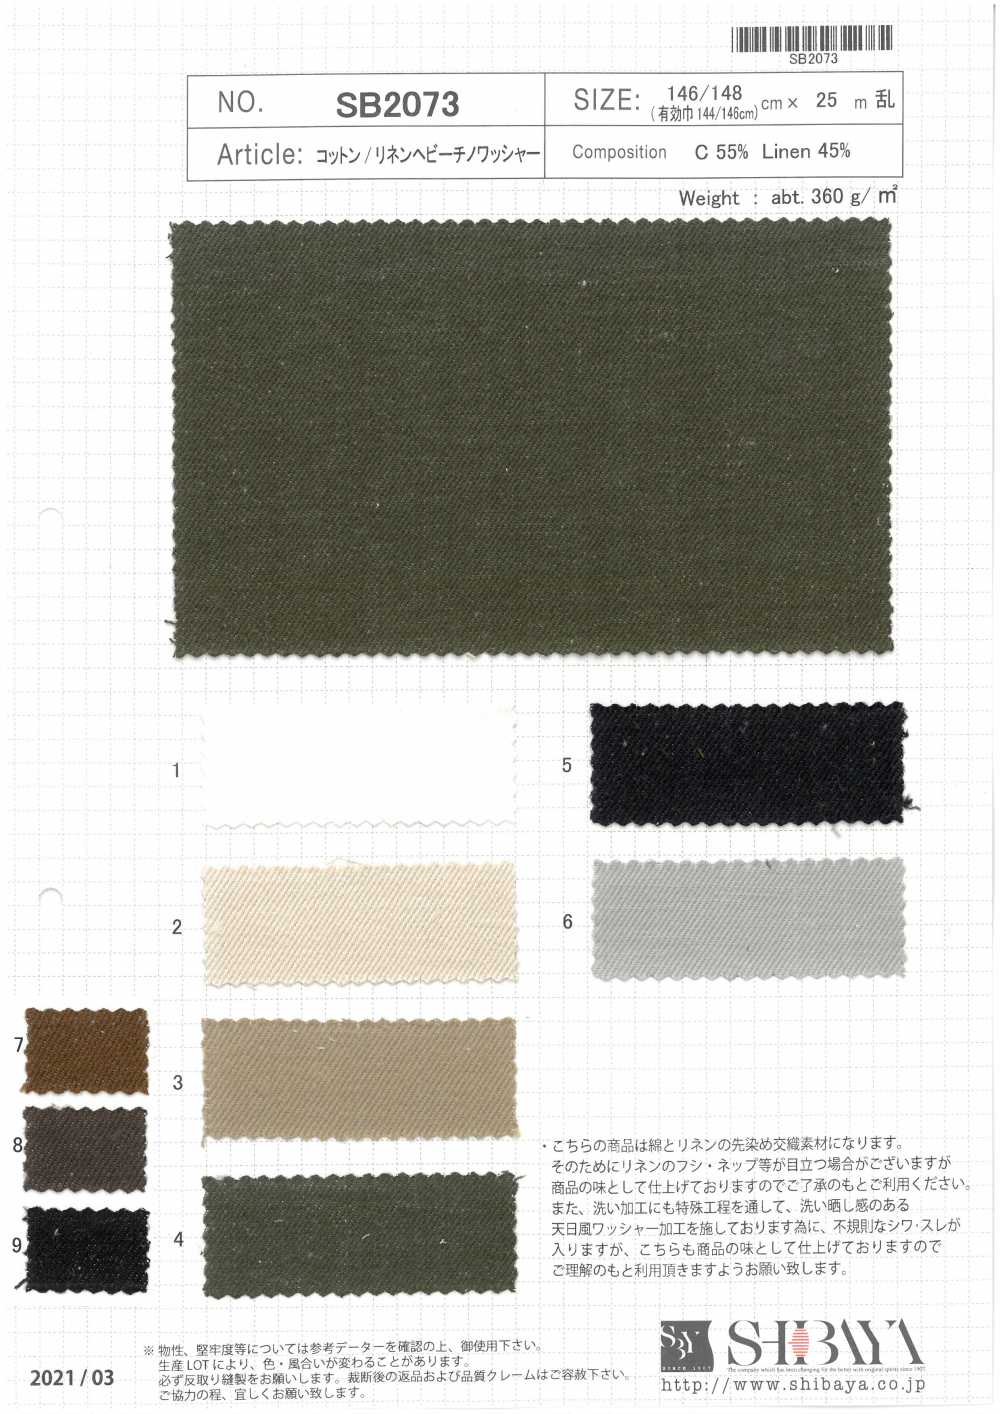 SB2073 [OUTLET] Processamento De Lavadora Pesada De Algodão/linho Chino[Têxtil / Tecido] SHIBAYA